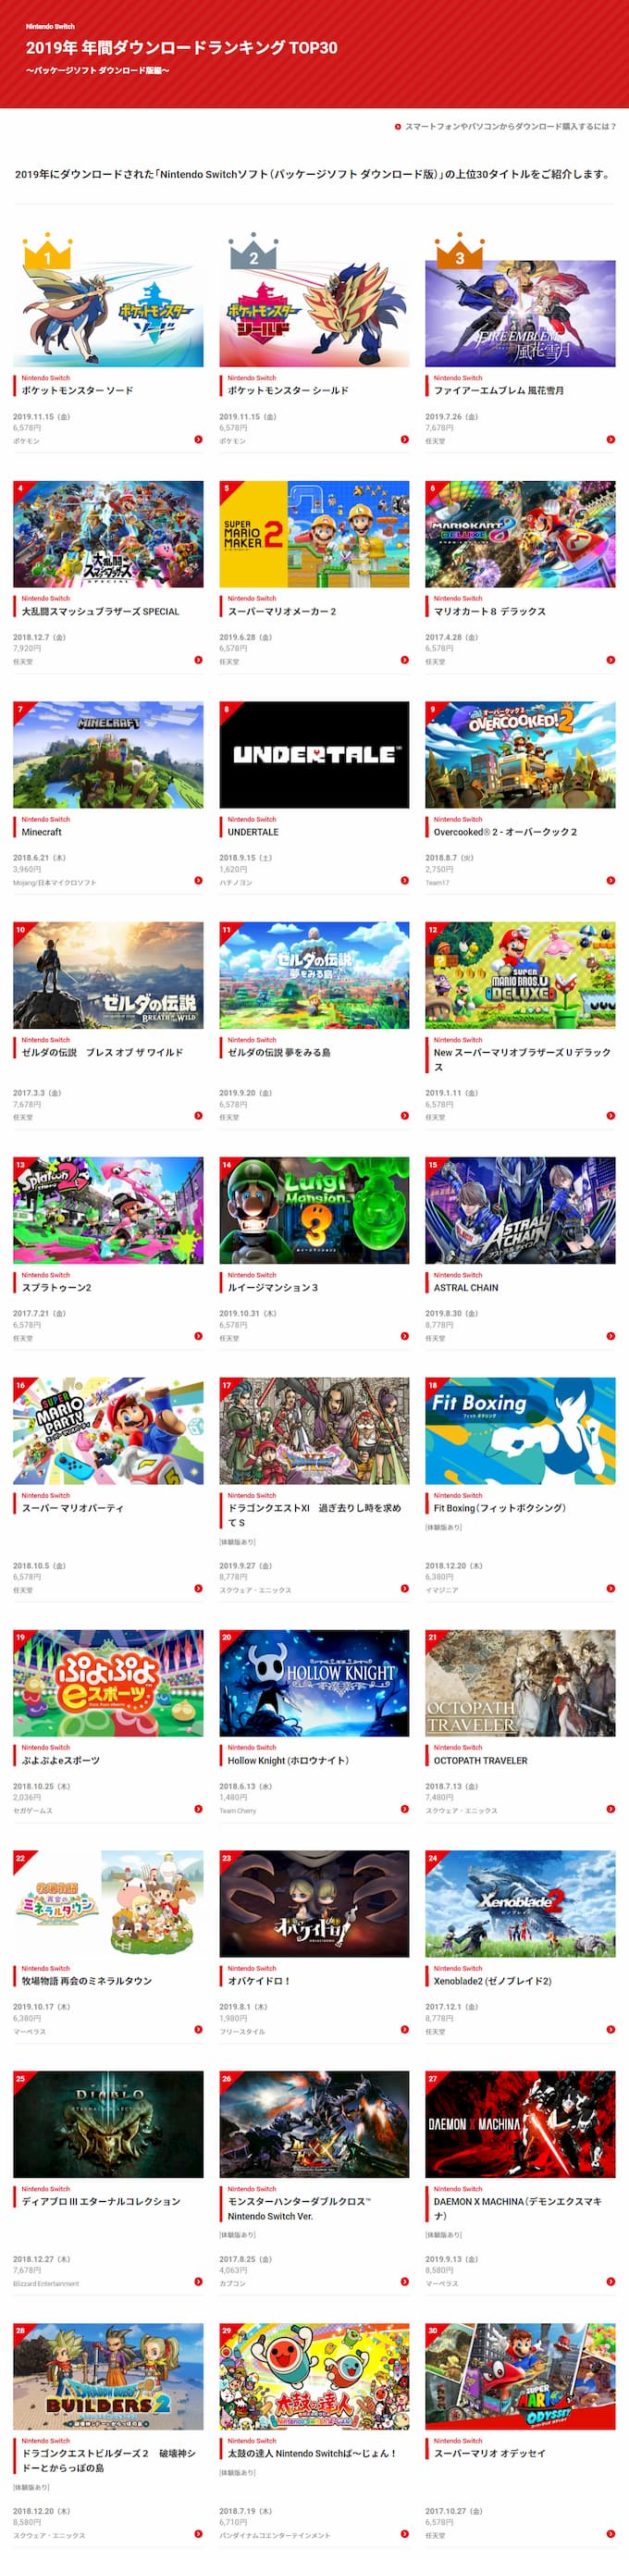 任天堂公式「Nintendo Switch 2019年 年間ダウンロードランキング TOP30」が公開│SWITCH速報